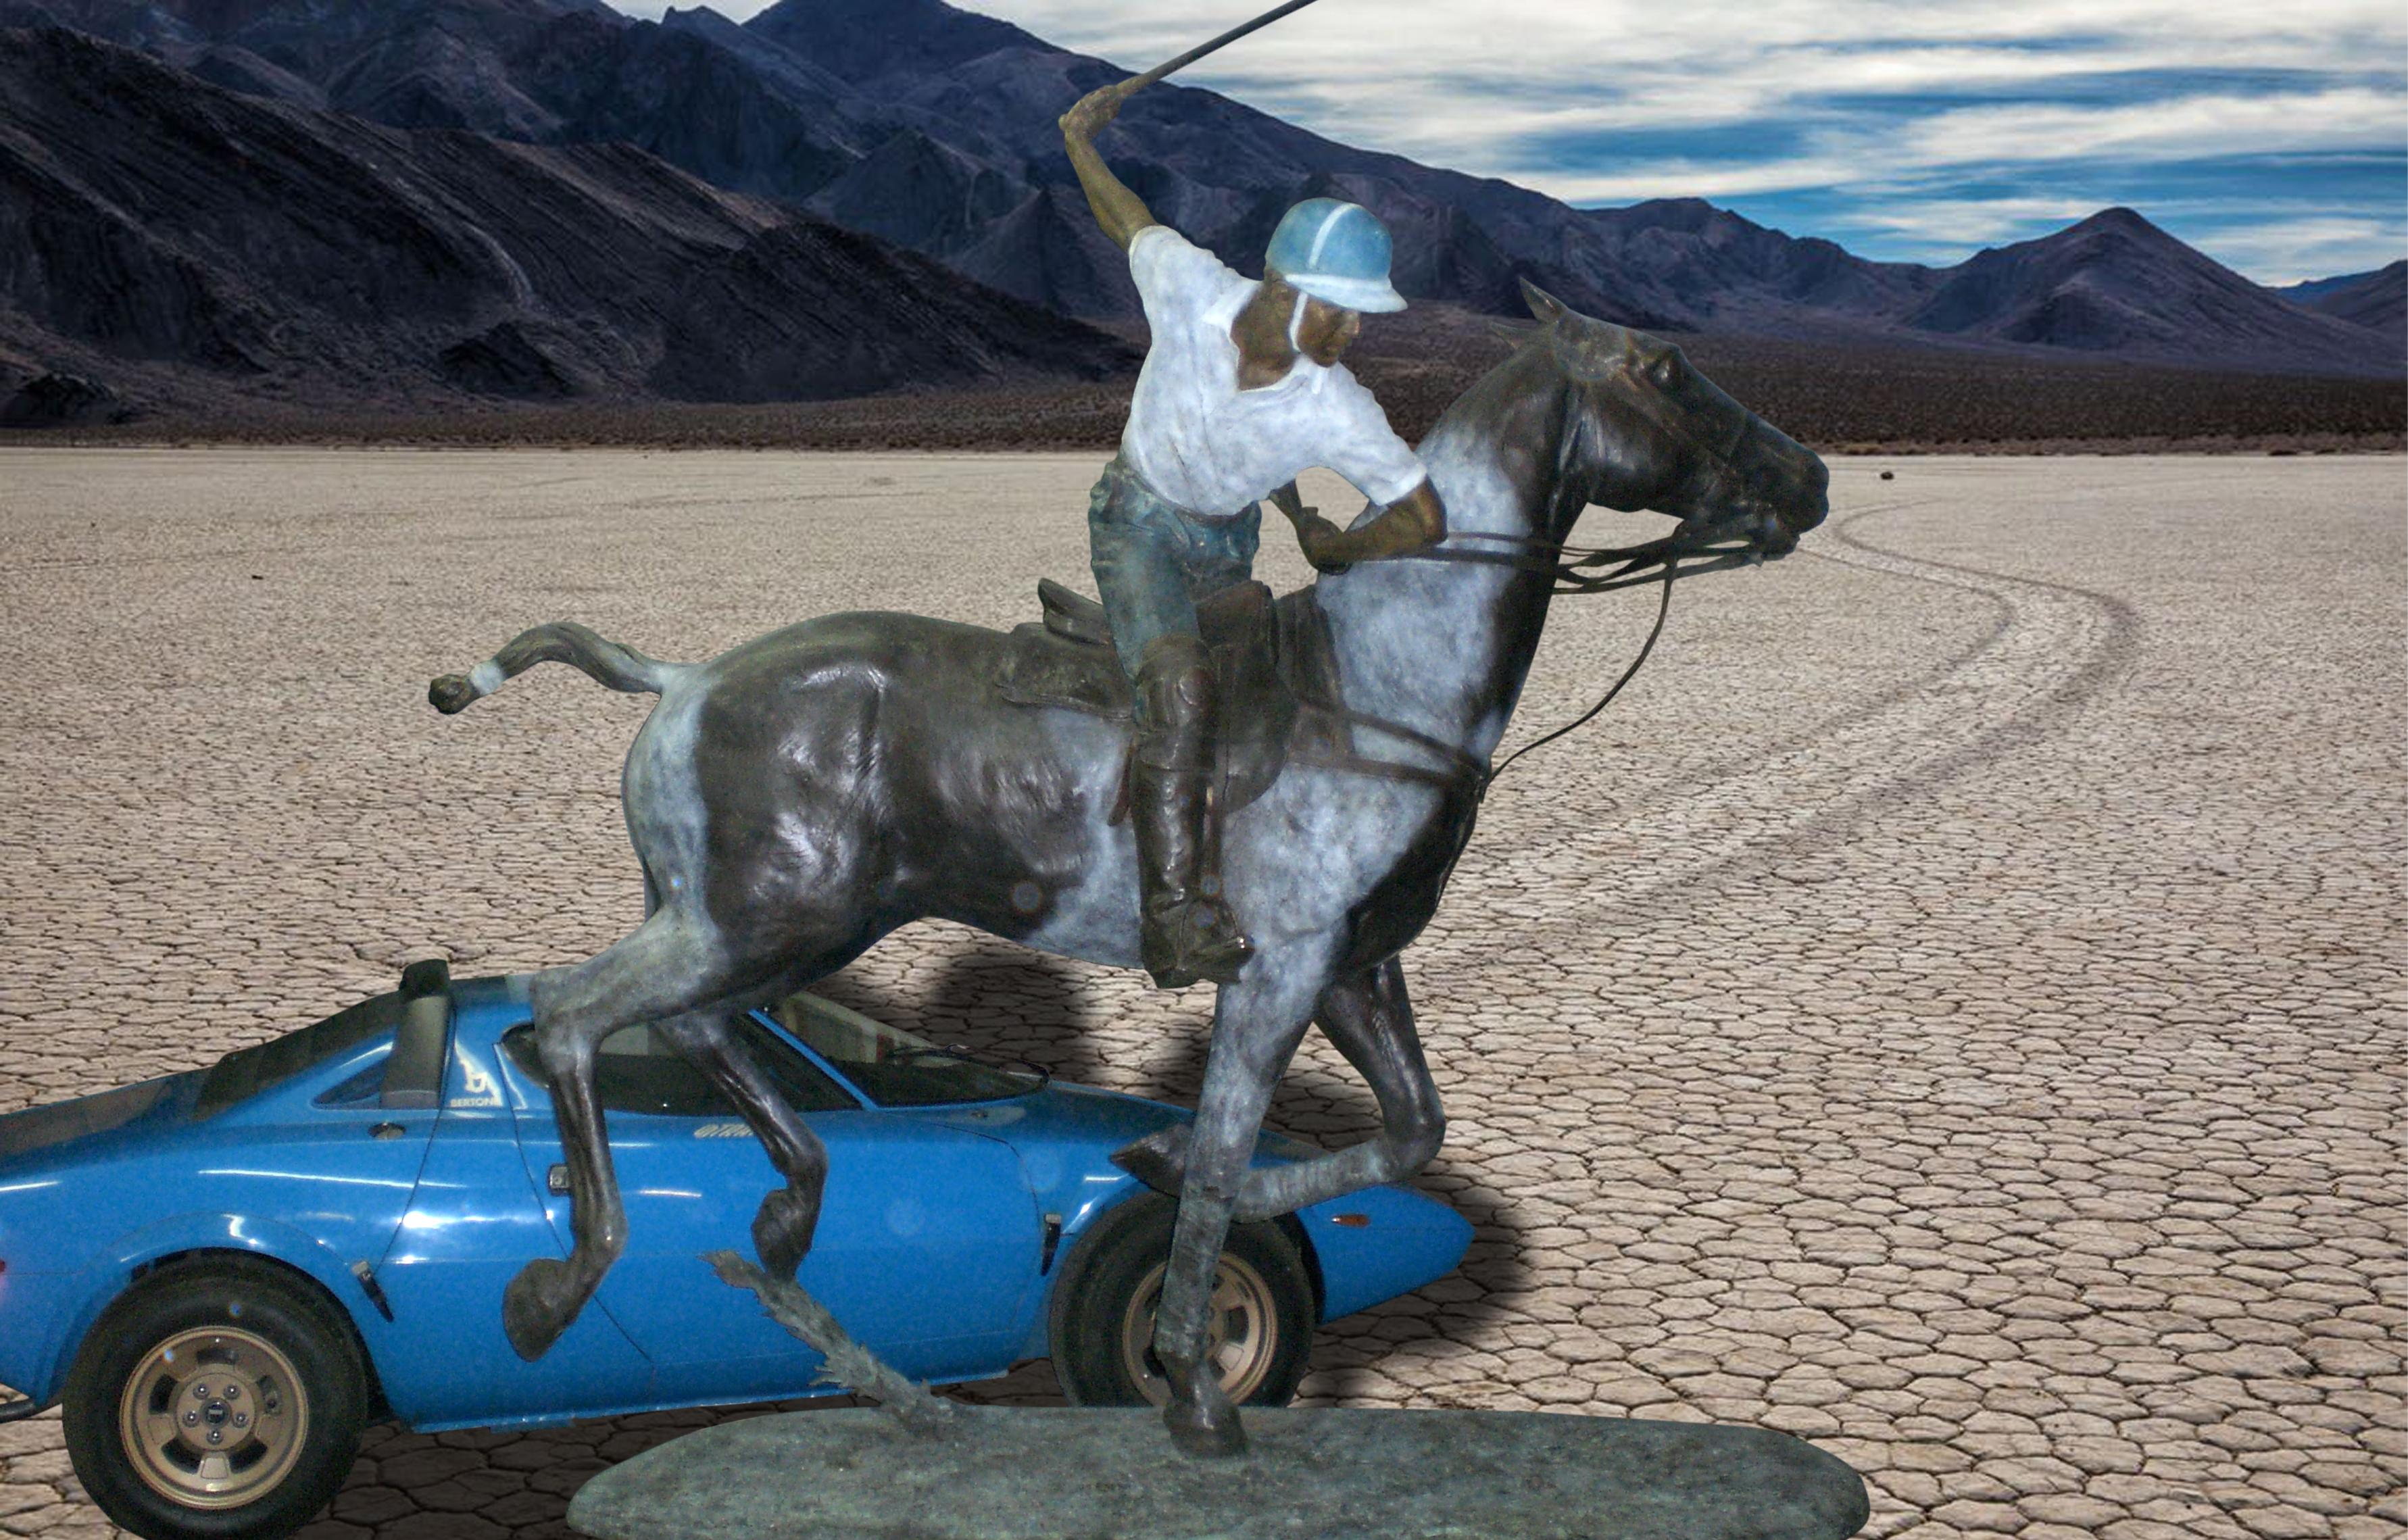 William Behrends, l'un des meilleurs sculpteurs américains vivants, a créé et sculpté ce spectaculaire joueur de polo en bronze grandeur nature.
Il a réalisé des portraits pour la Maison Blanche, les Capitoles de C.A.D. et du Tennessee, l'Astrodome